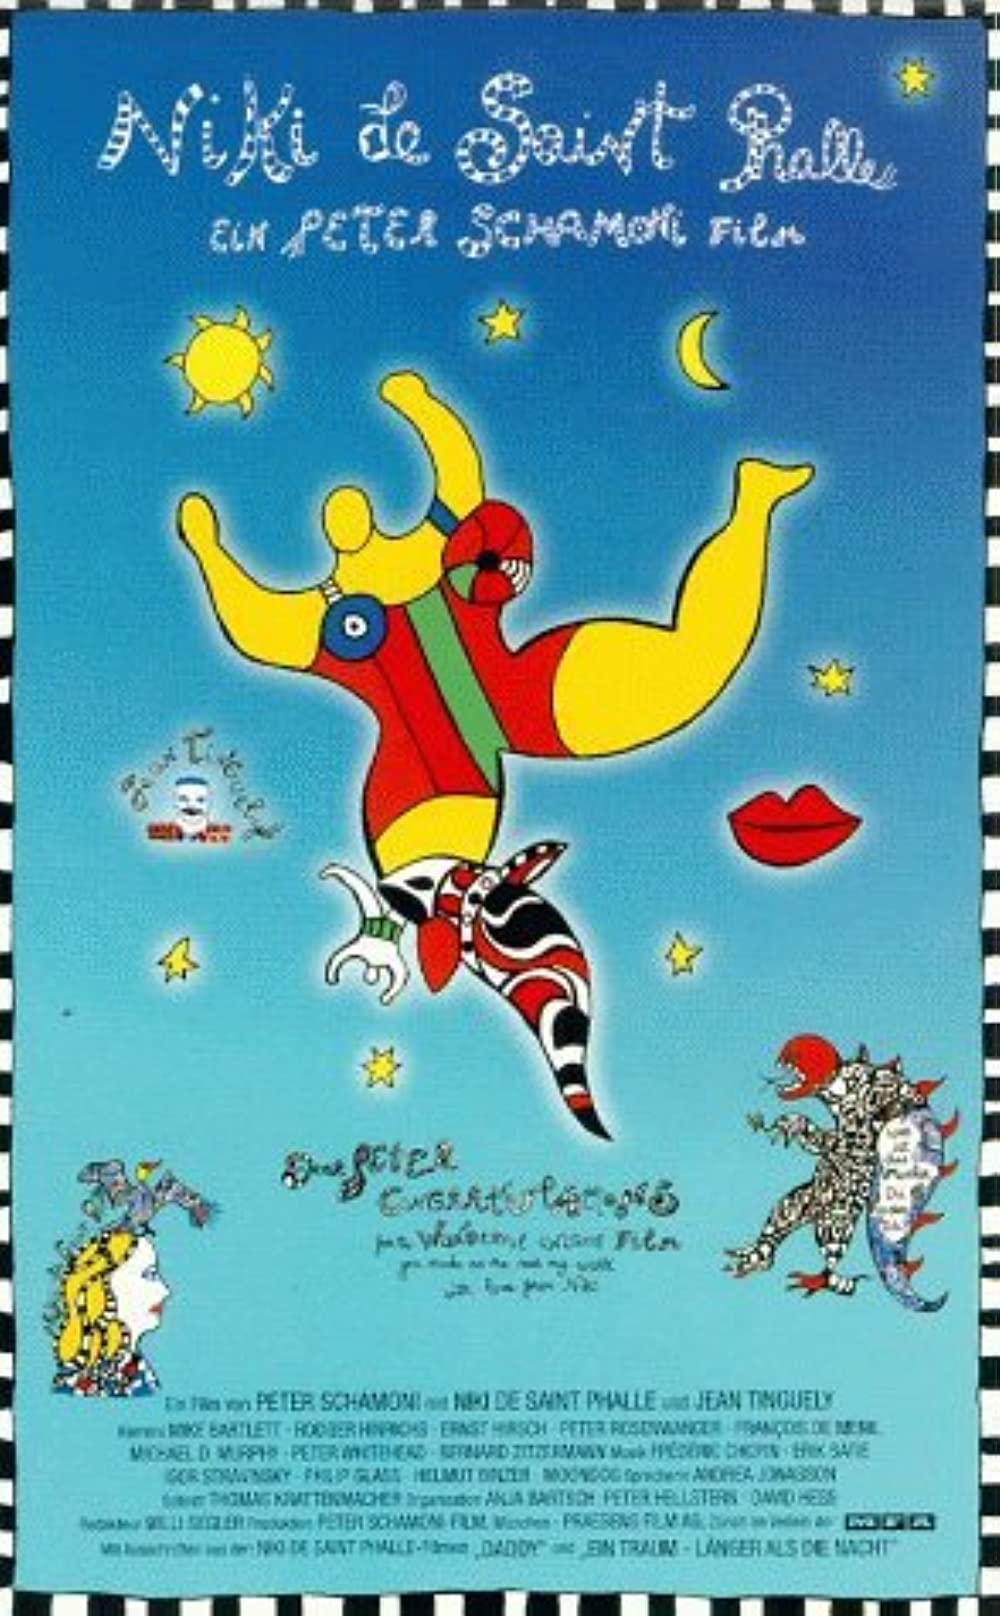 Filmbeschreibung zu Niki de Saint Phalle - Wer ist das Monster - Du oder ich?